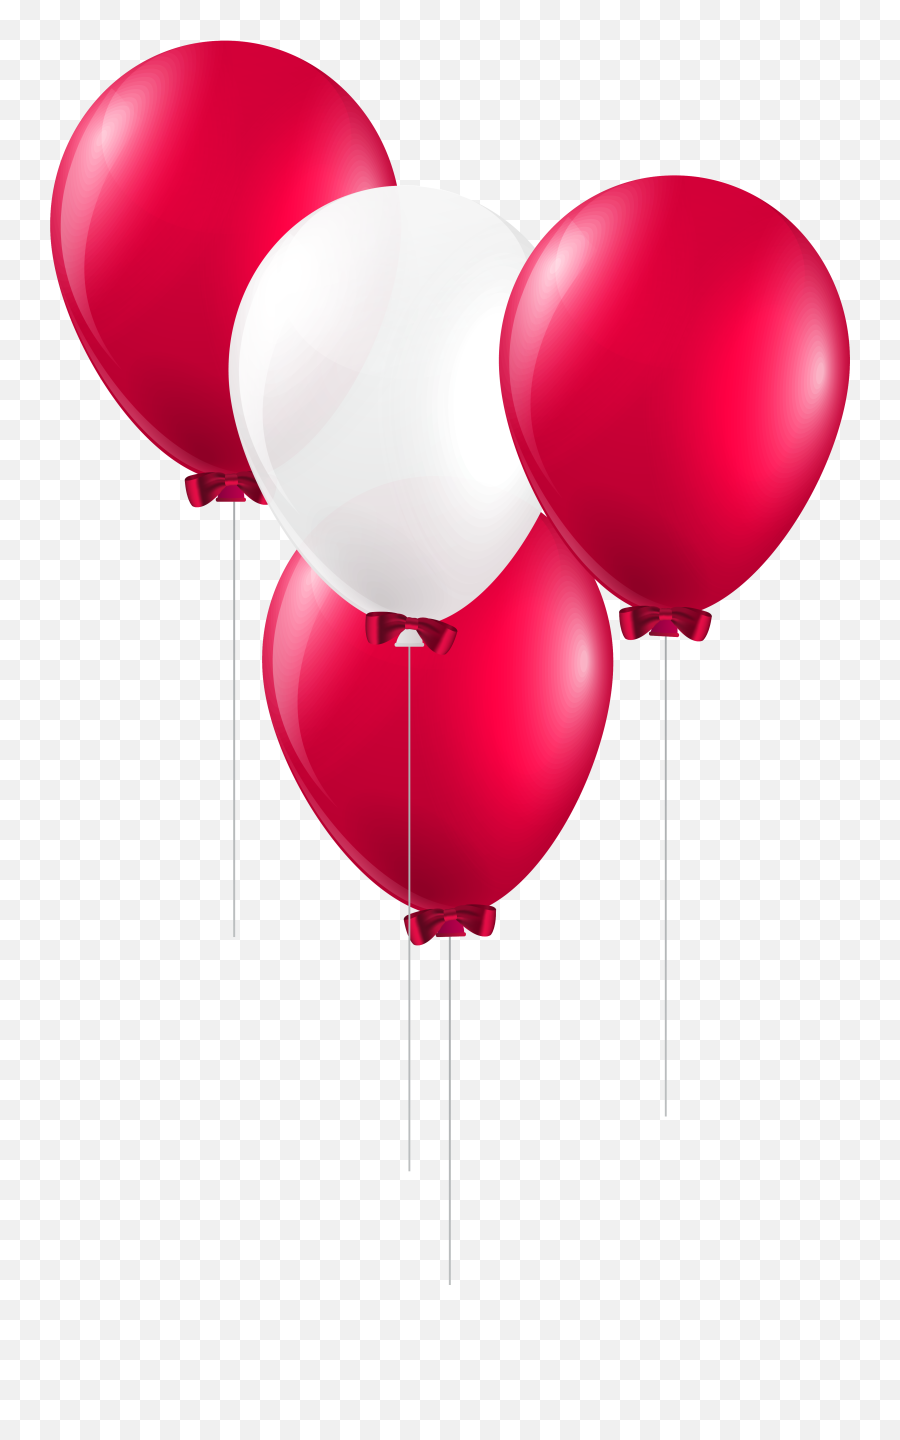 Emoji Balloon Party Redballoon Red Ball Travel Pin - Clip Ballon Red And White,Ballon Emoji